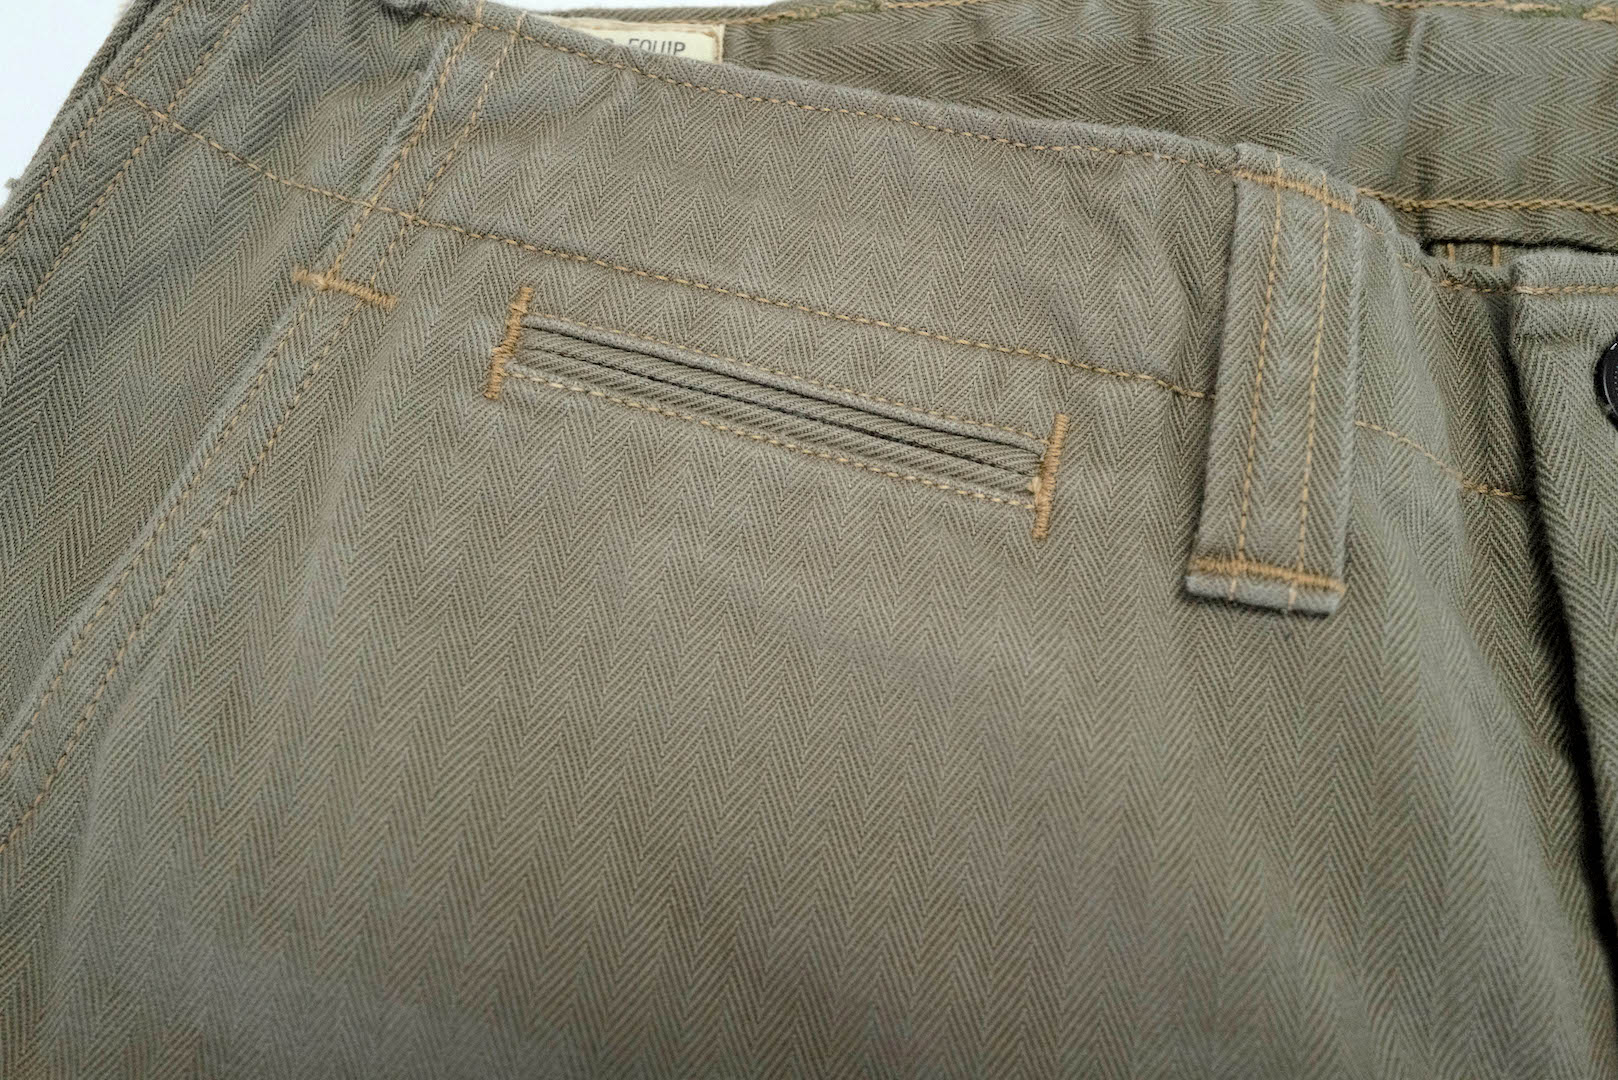 Freewheelers M-1942 HBT Cut-Length Trousers (Olive)